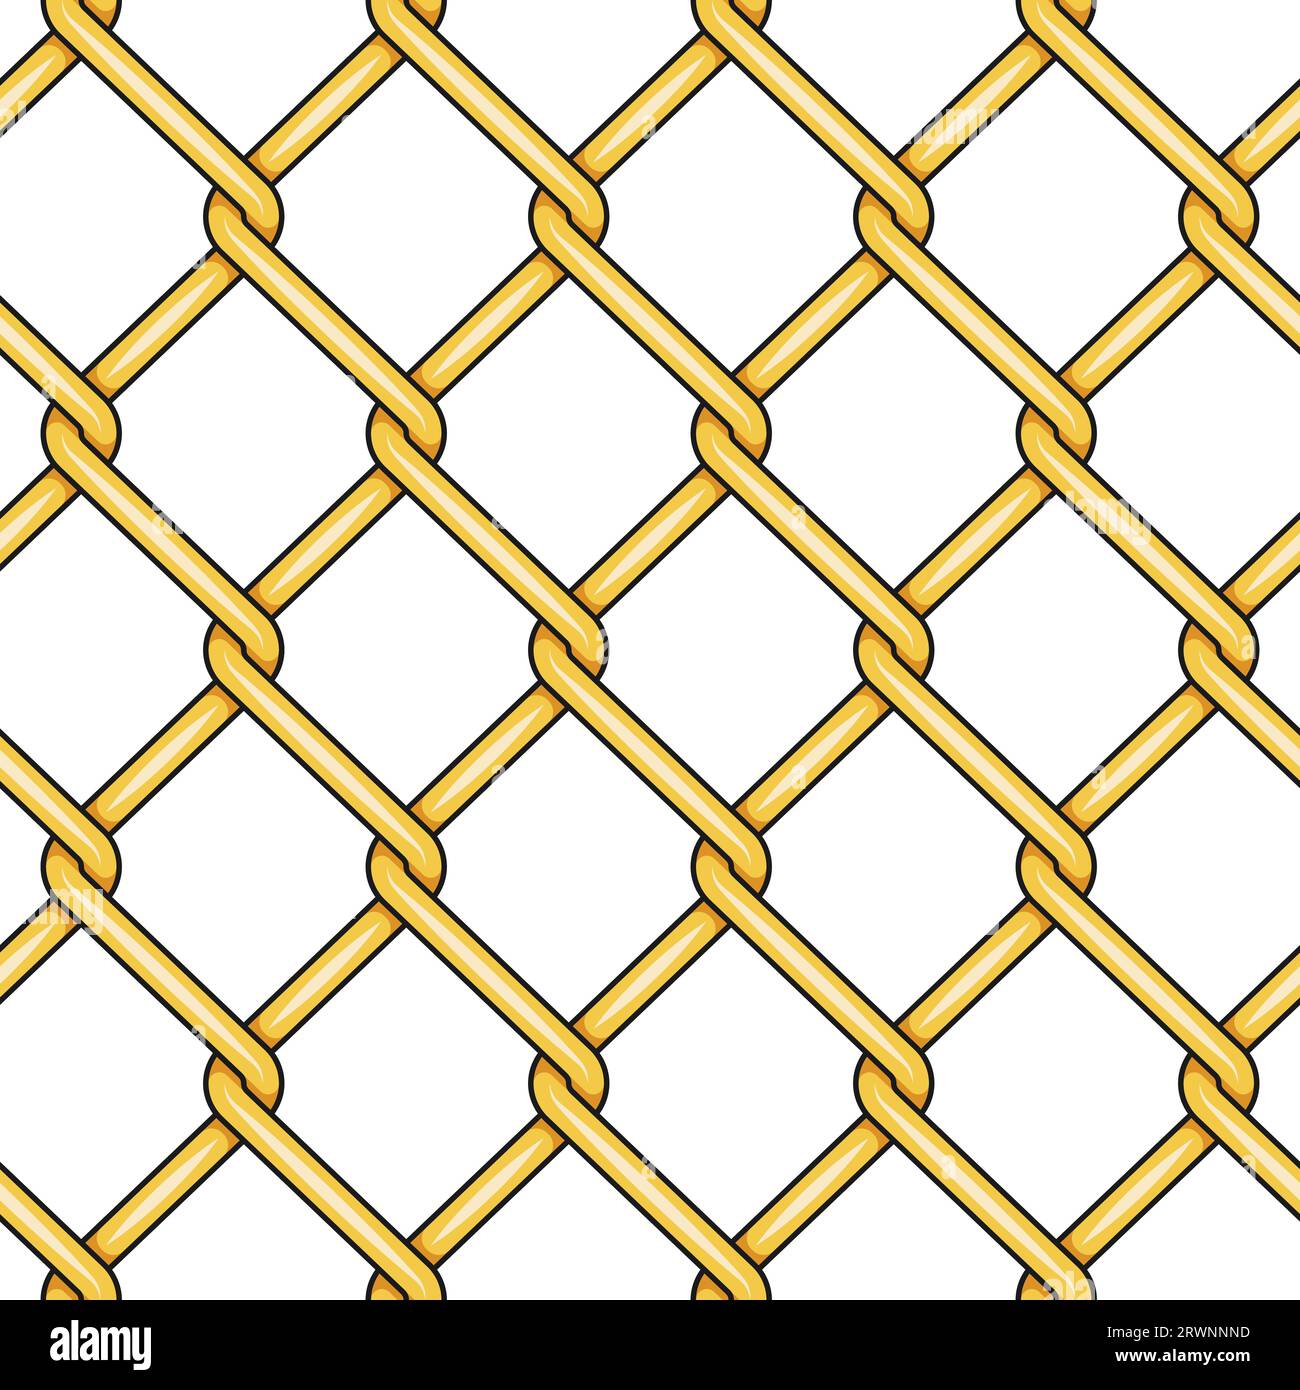 Nahtloses Muster mit goldfarbenem Mesh-Netz. Vektorfarbiger Hintergrund auf weiß. Stock Vektor